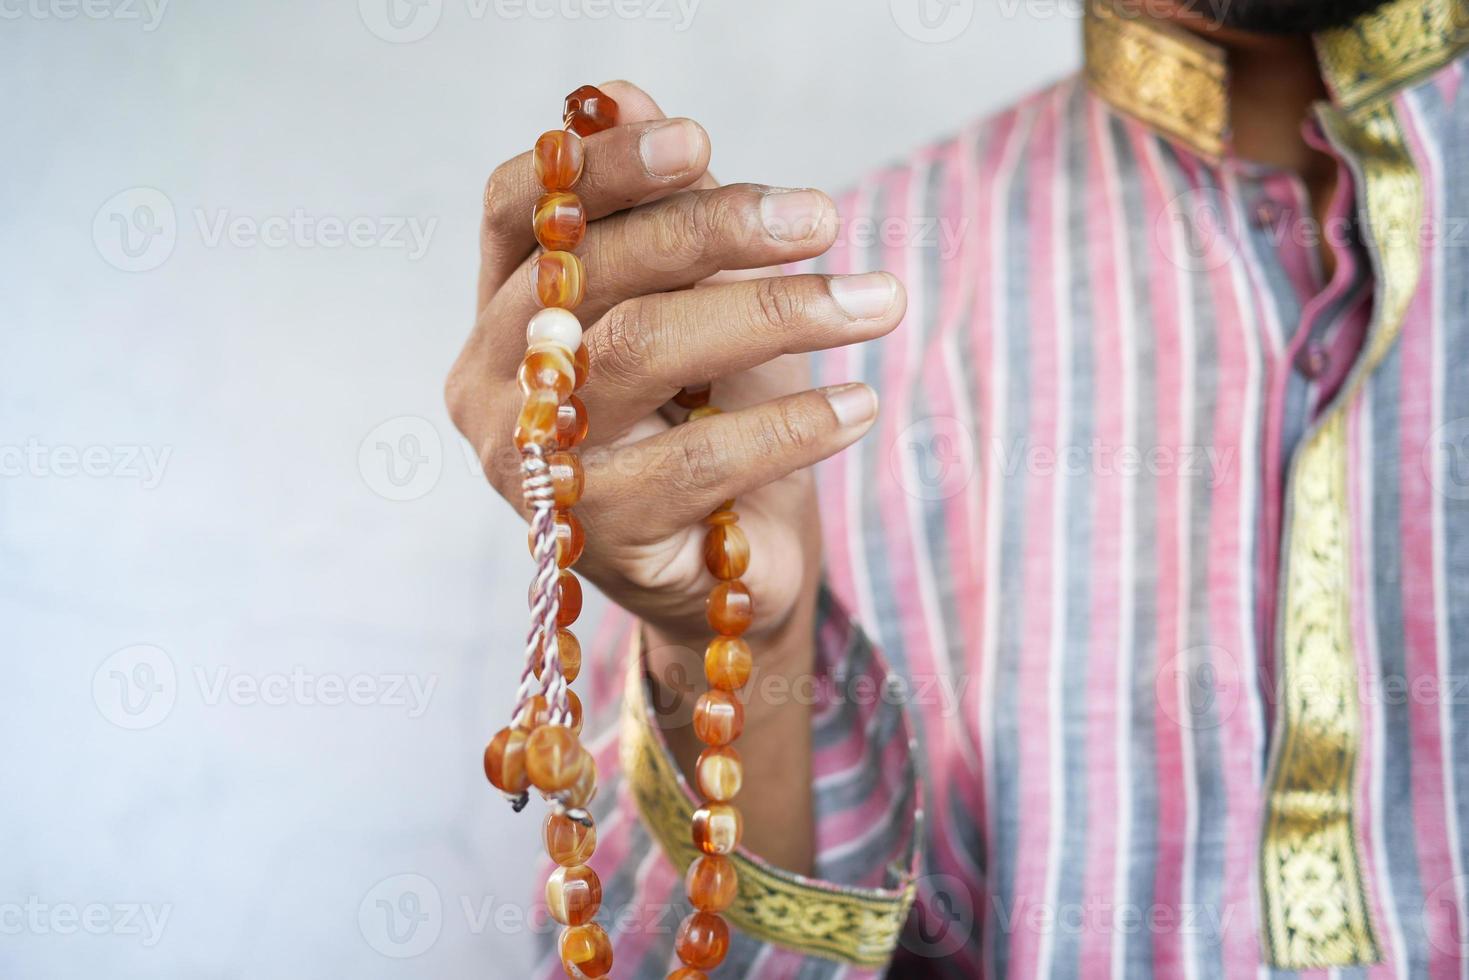 muçulmano maneja gestos de oração durante o ramadã, close-up foto